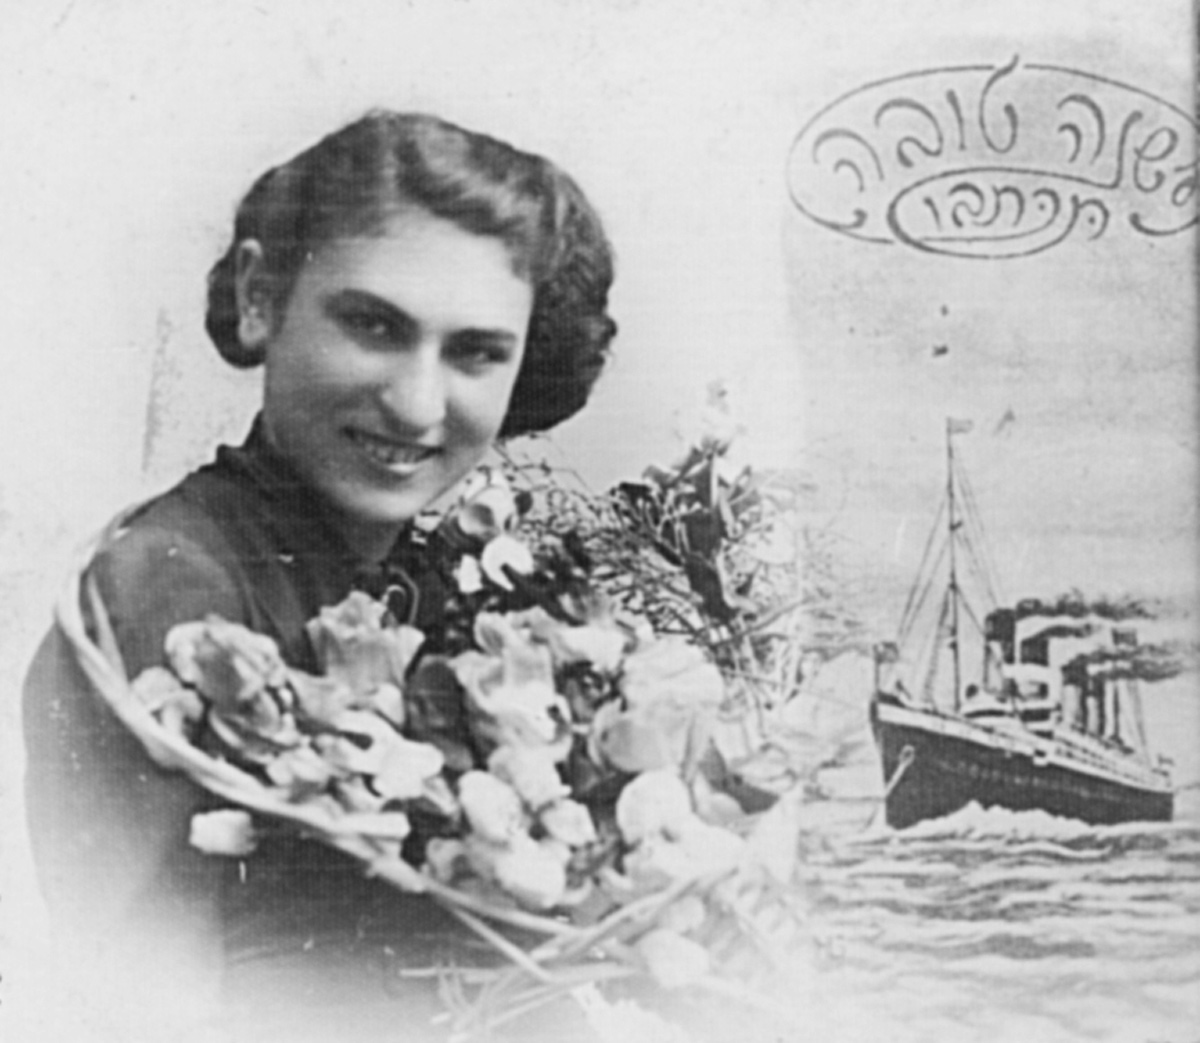 Carte de "Shana Tova" (Bonne année) envoyée avec son portrait par Henia Lubliner de Siedllce, Pologne, à sa sœur Esther Herz (plus tard Kermersh-Cnaani) en <i>Eretz Israël</i> (Palestine mandataire) avant la guerre